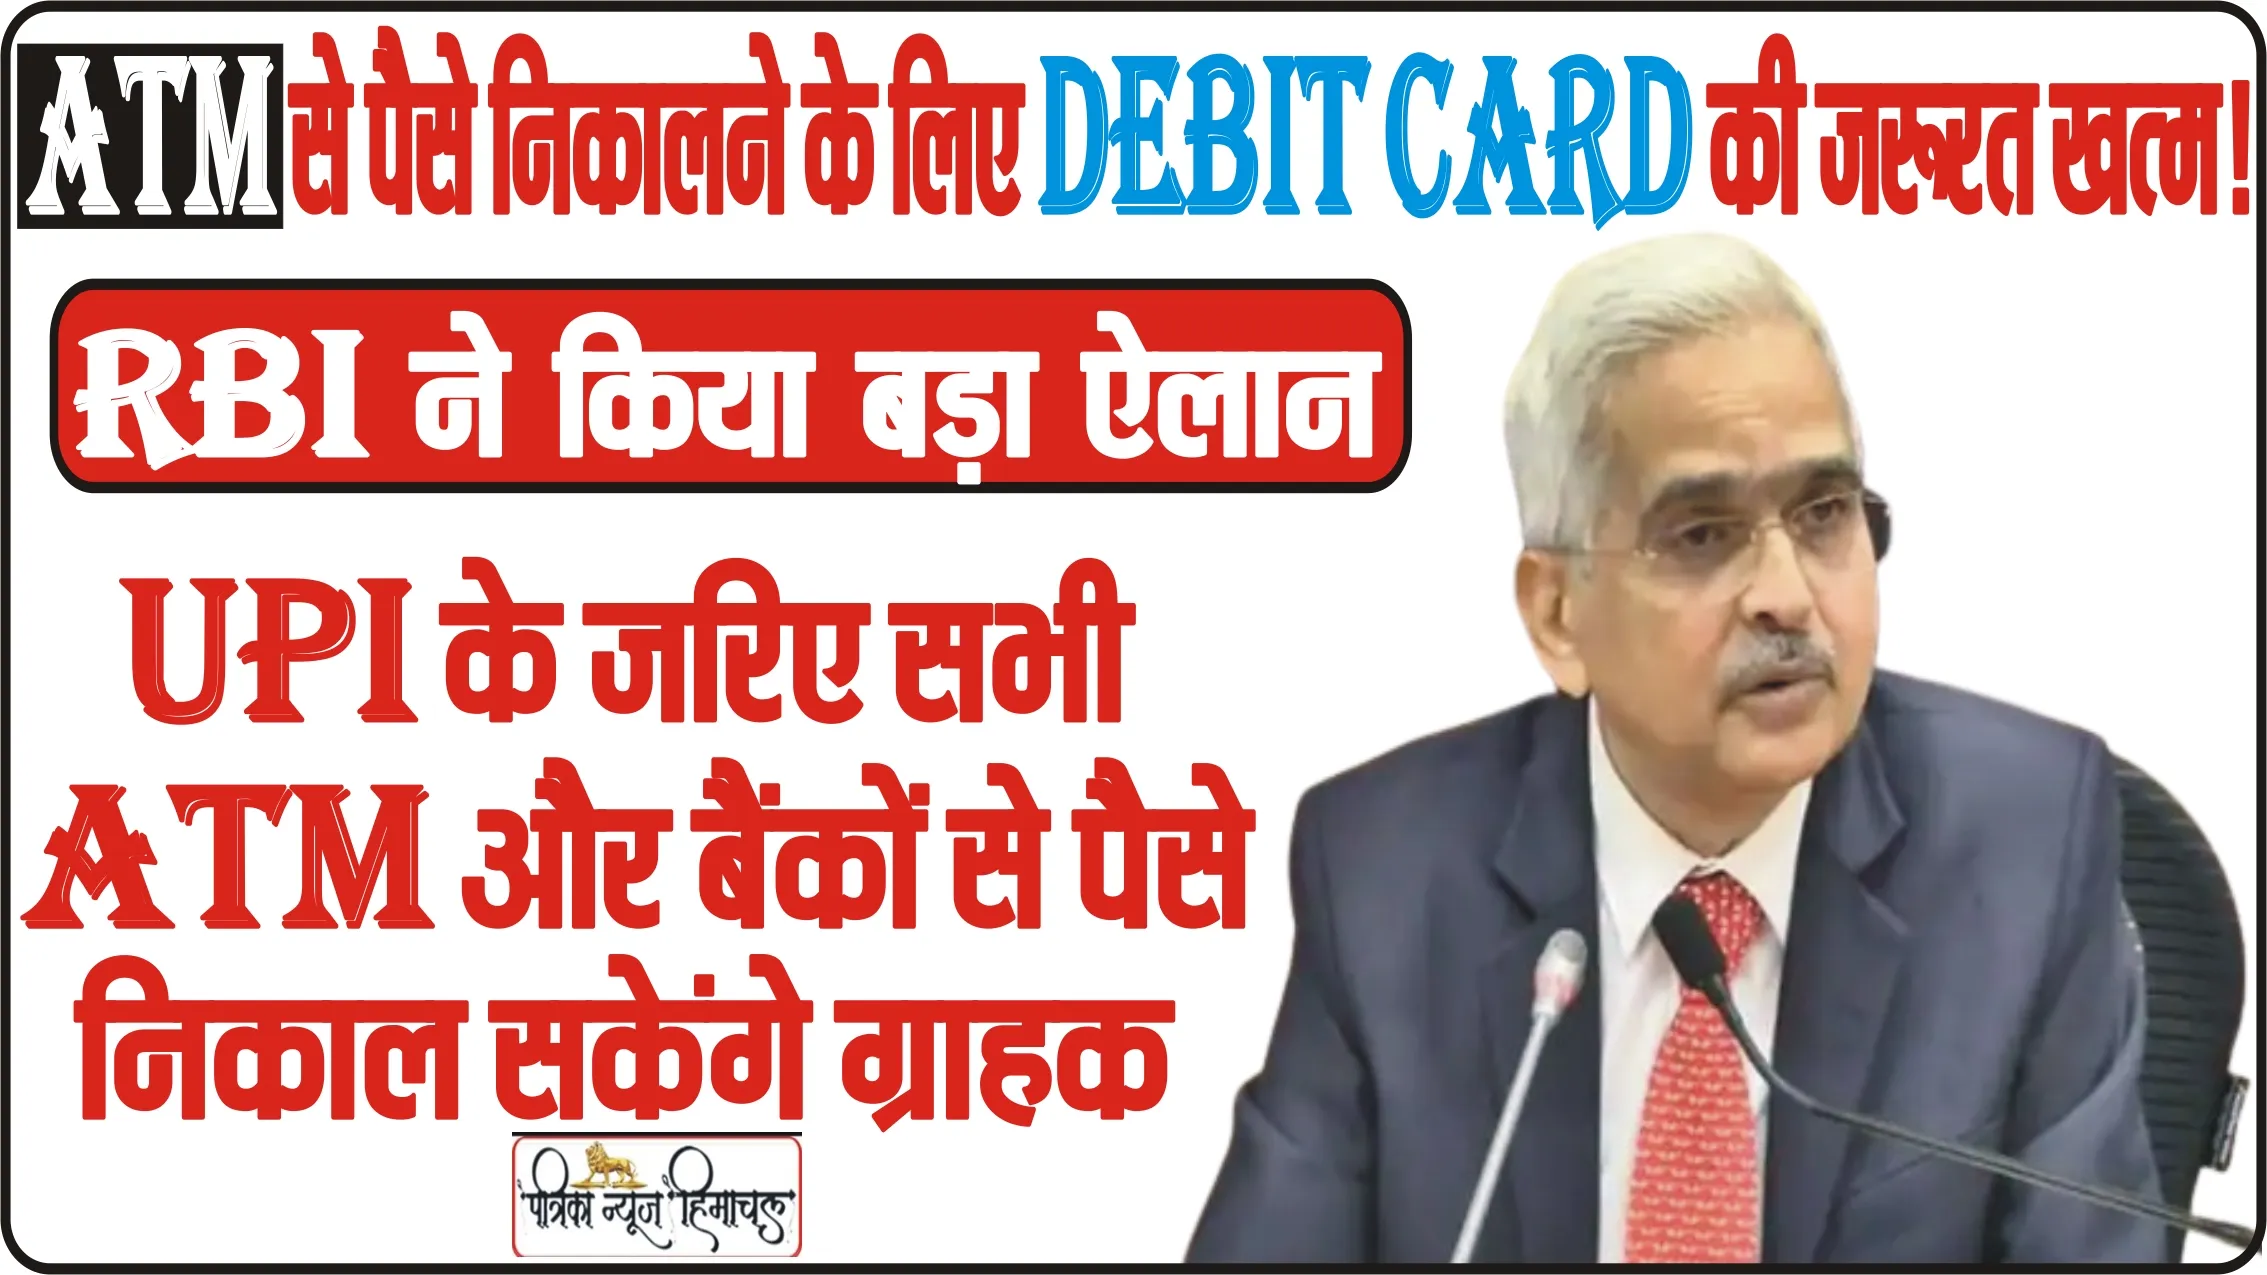 RBI MPC Meet || RBI ने किया बड़ा ऐलान, अब  ATM से पैसे निकालने के लिए Debit Card की जरूरत खत्म! UPI के जरिए सभी ATM और बैंकों से पैसे निकाल सकेंगे ग्राहक,